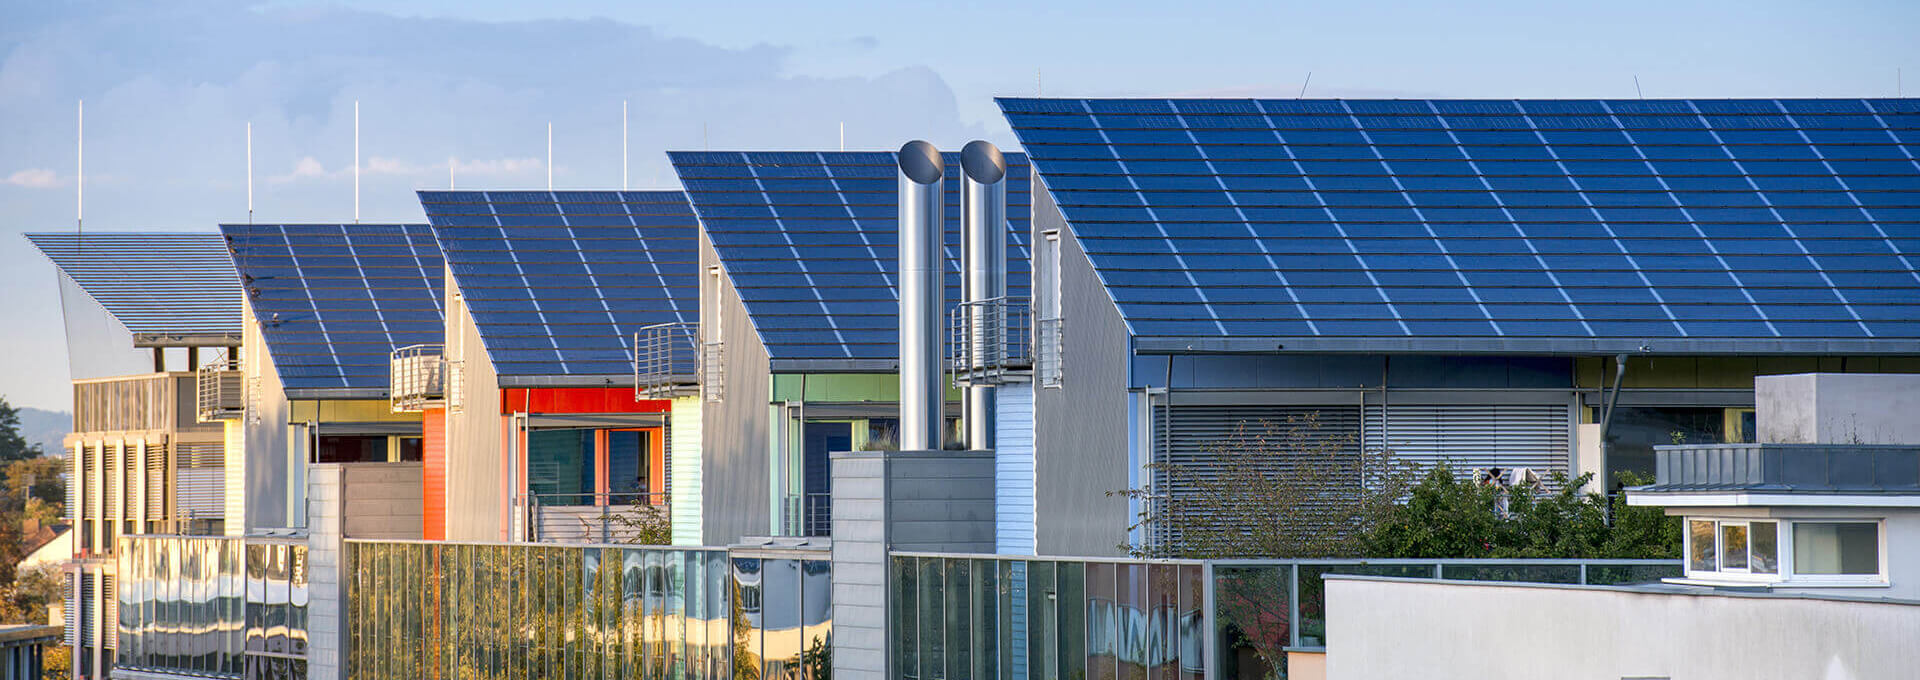 Effiziente Stadt - Solardach